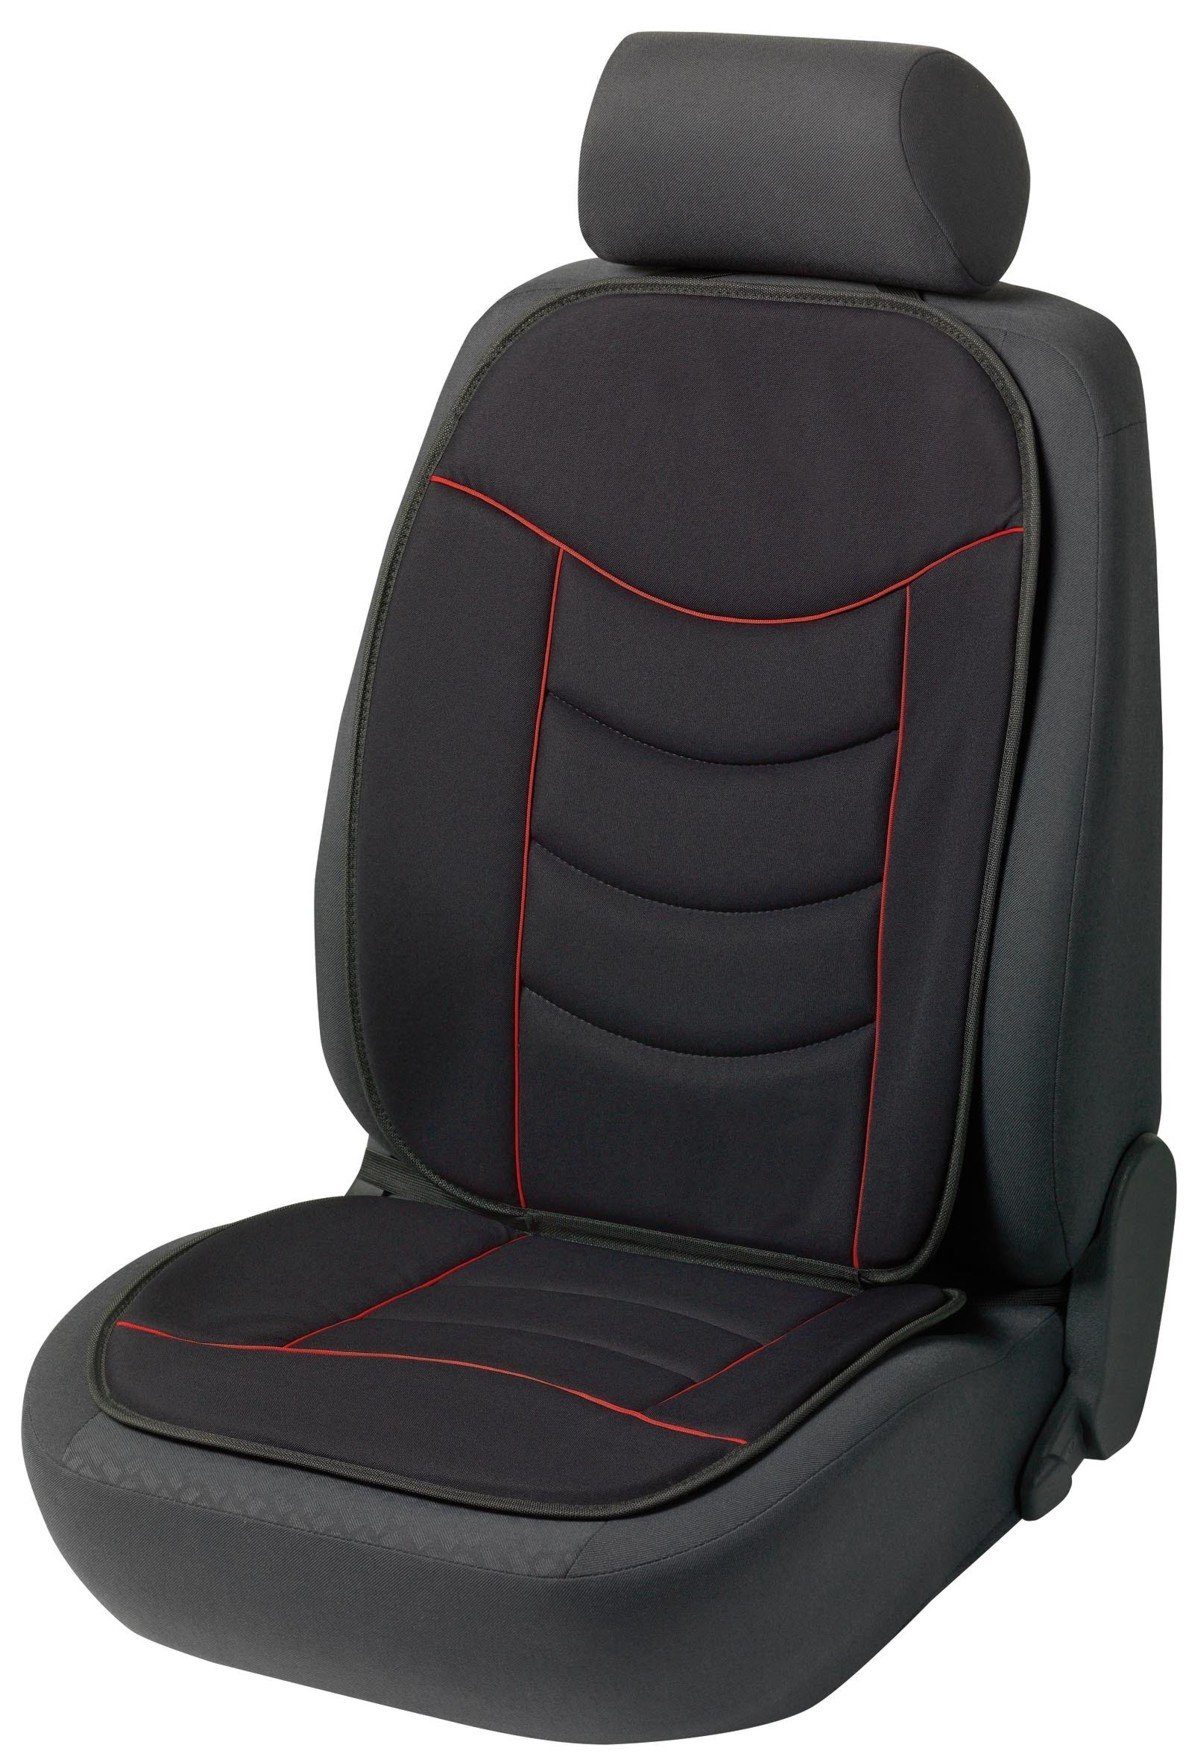 WALSER Autositzauflage Universal Auto Sitzauflage Elegance schwarz rot hoher Rücken waschbar